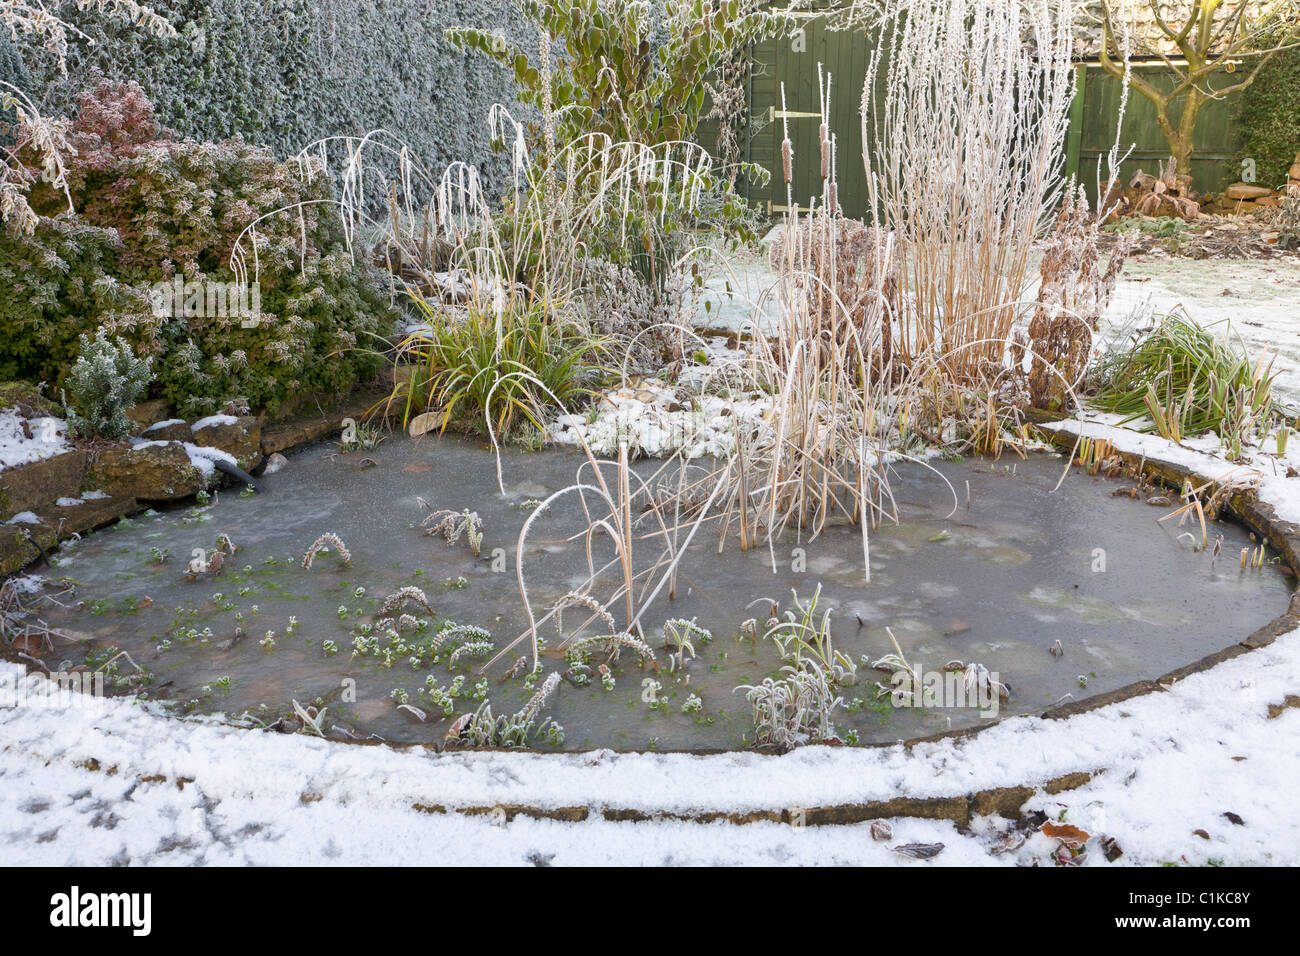 https://c8.alamy.com/comp/C1KC8Y/frozen-garden-pond-in-winter-C1KC8Y.jpg